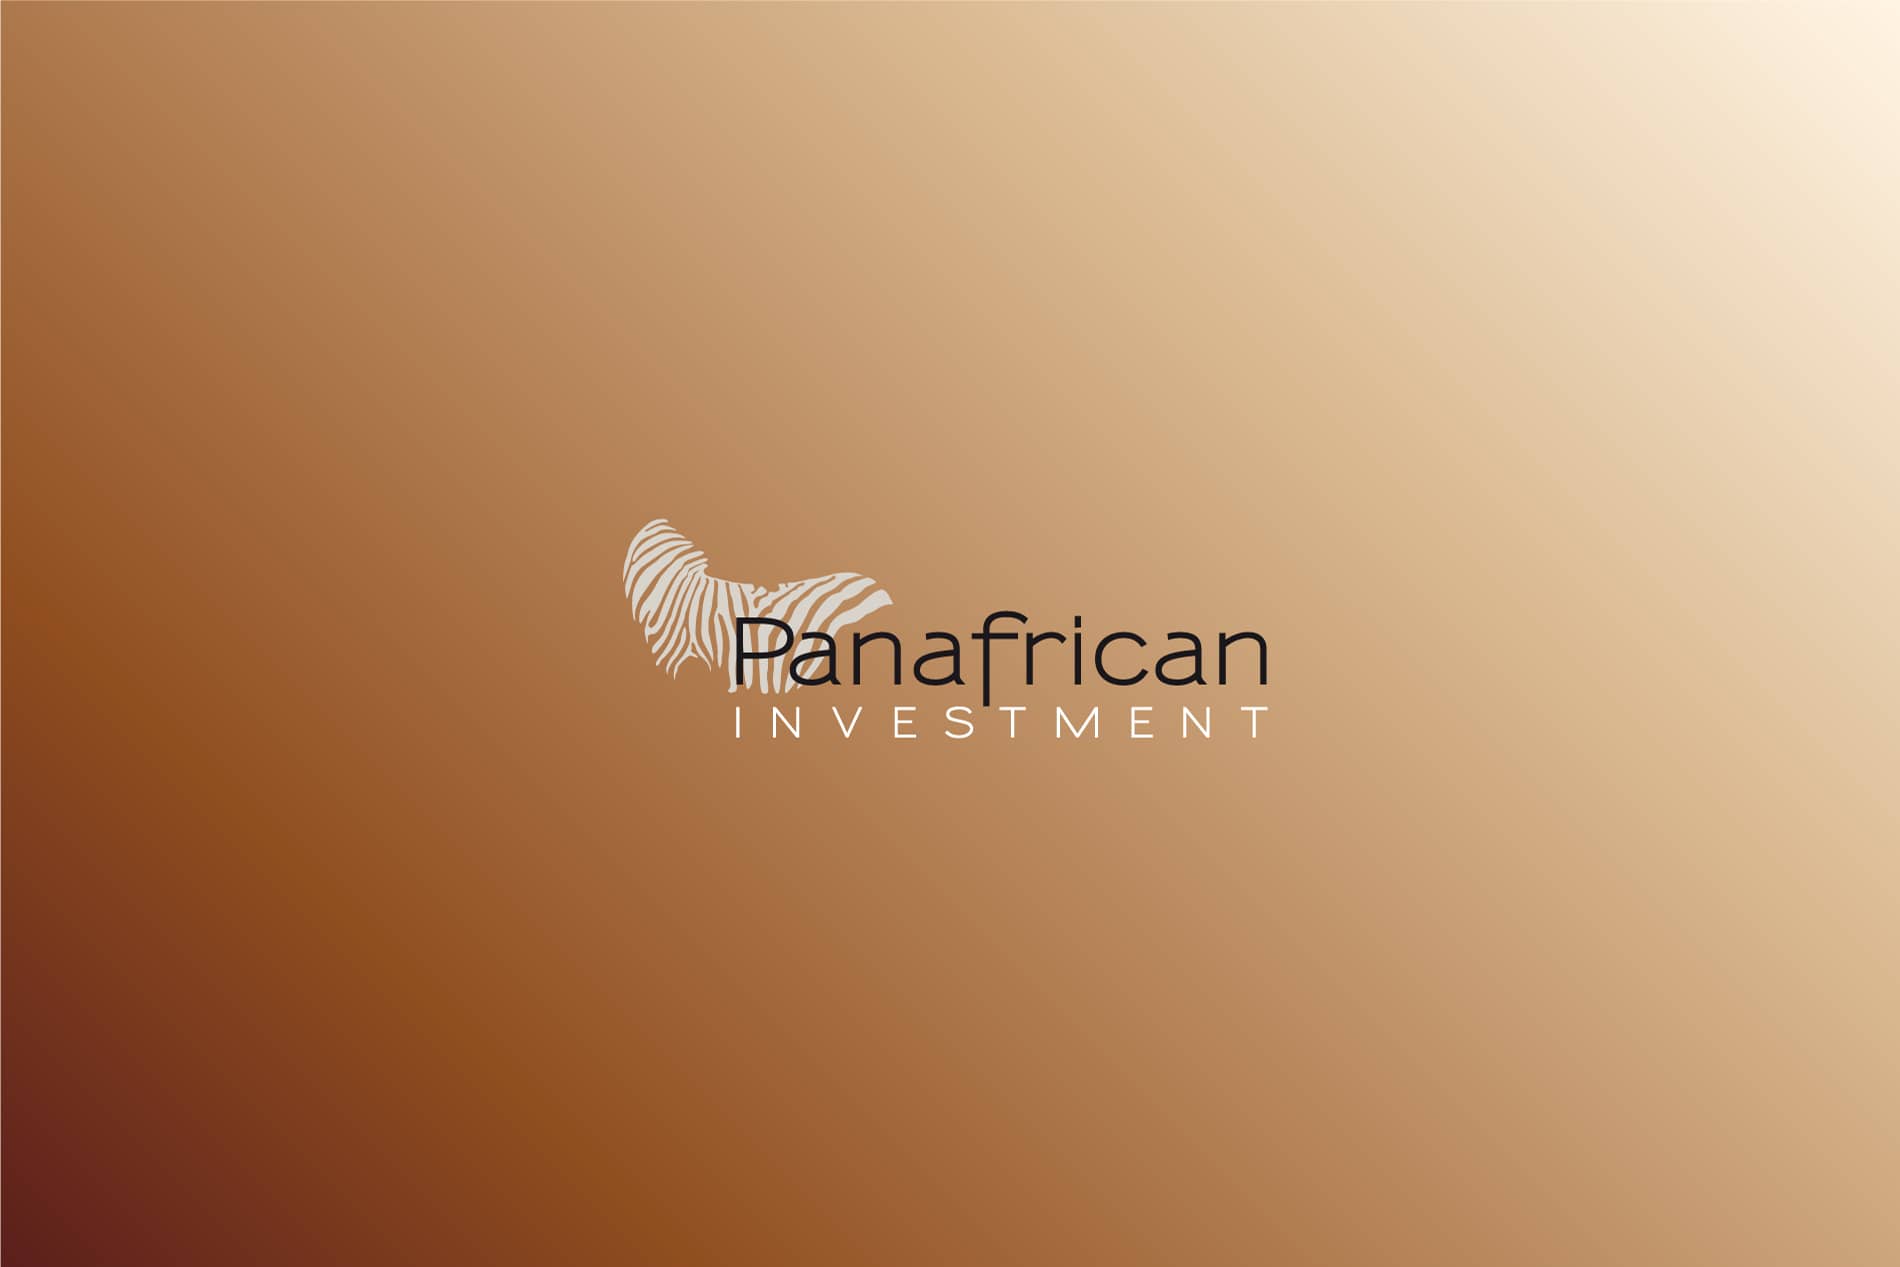 Logotipo Panafrican blanco sobre fondo marrón branding por The Acctitude diseño web